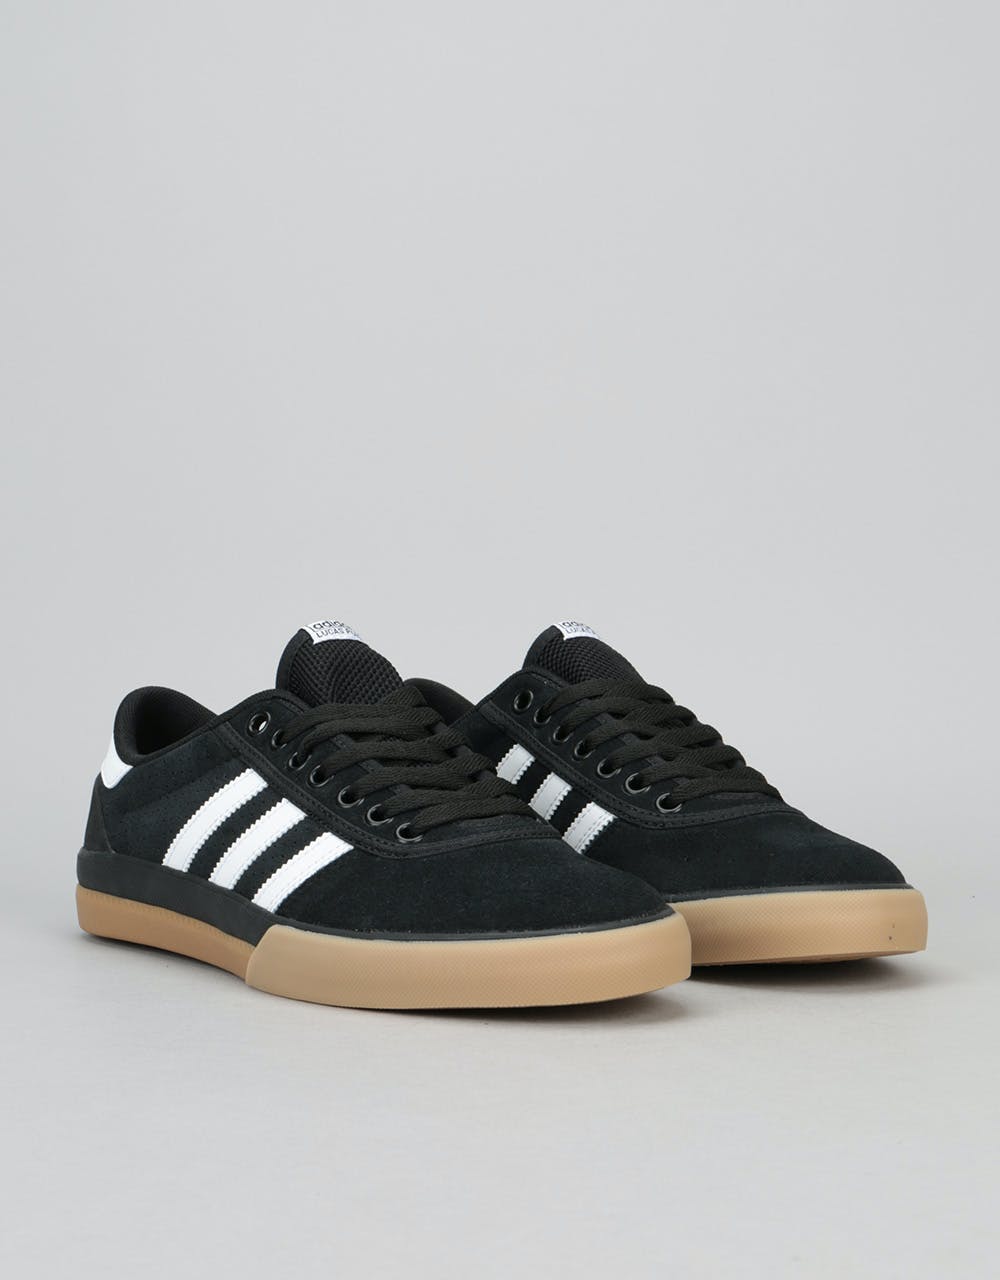 Adidas Lucas Premiere ADV Skate Shoes - Core Black/Core Black/Gum